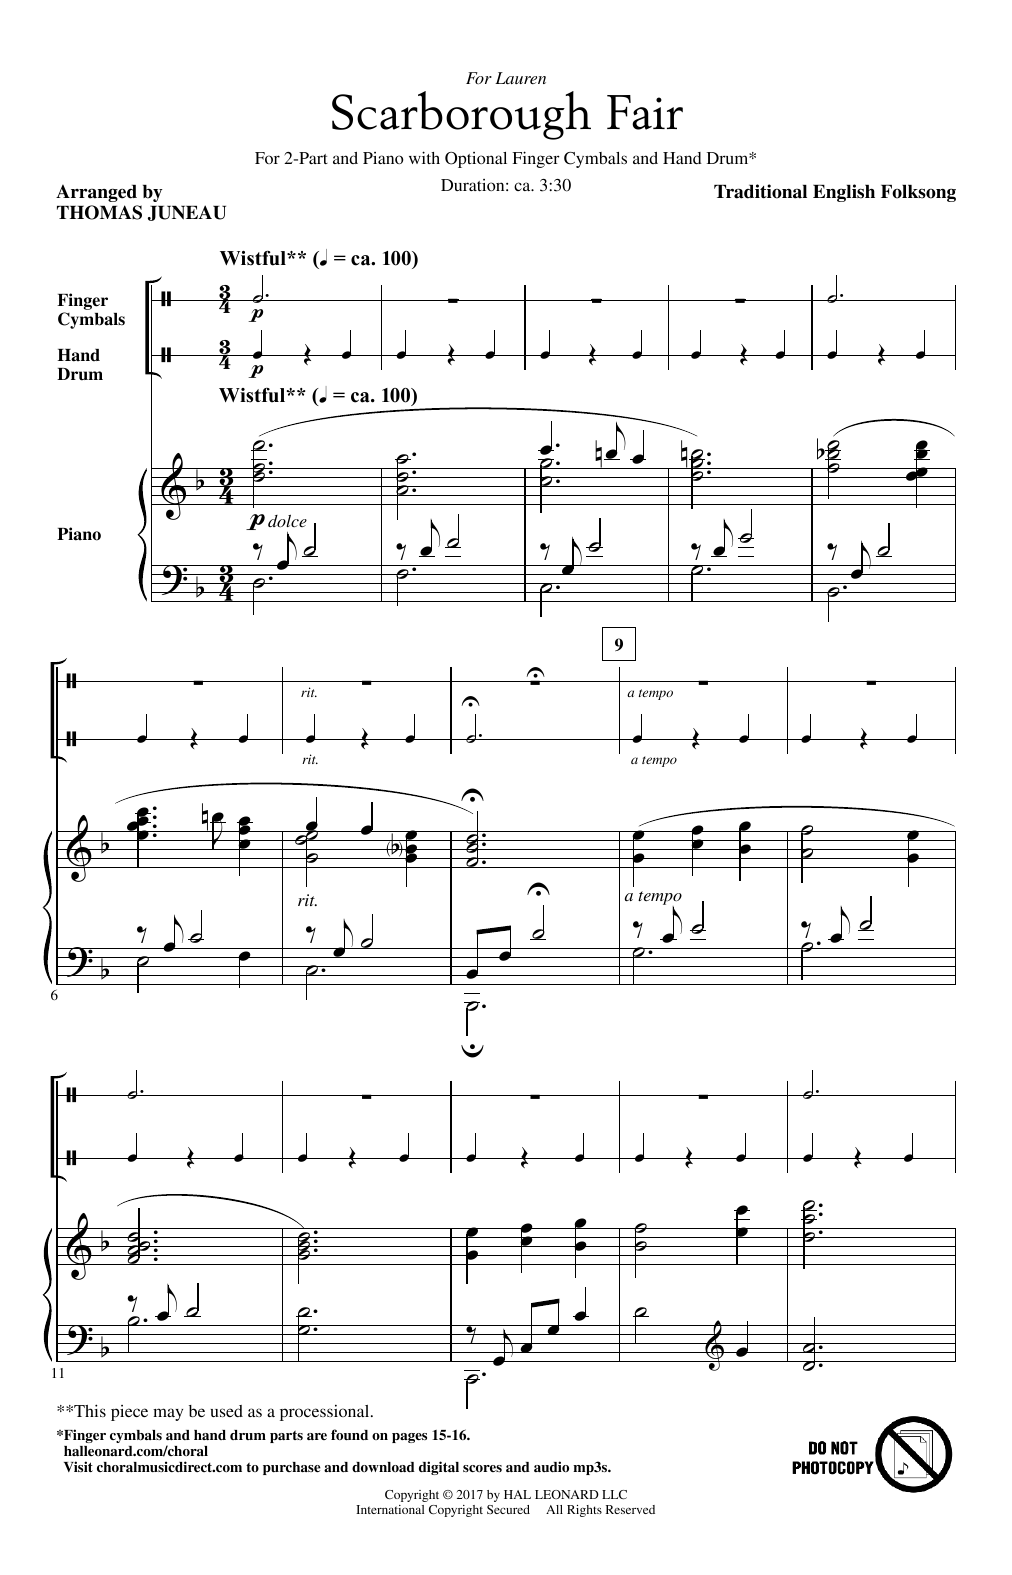 Thomas Juneau Scarborough Fair Sheet Music Notes & Chords for 2-Part Choir - Download or Print PDF